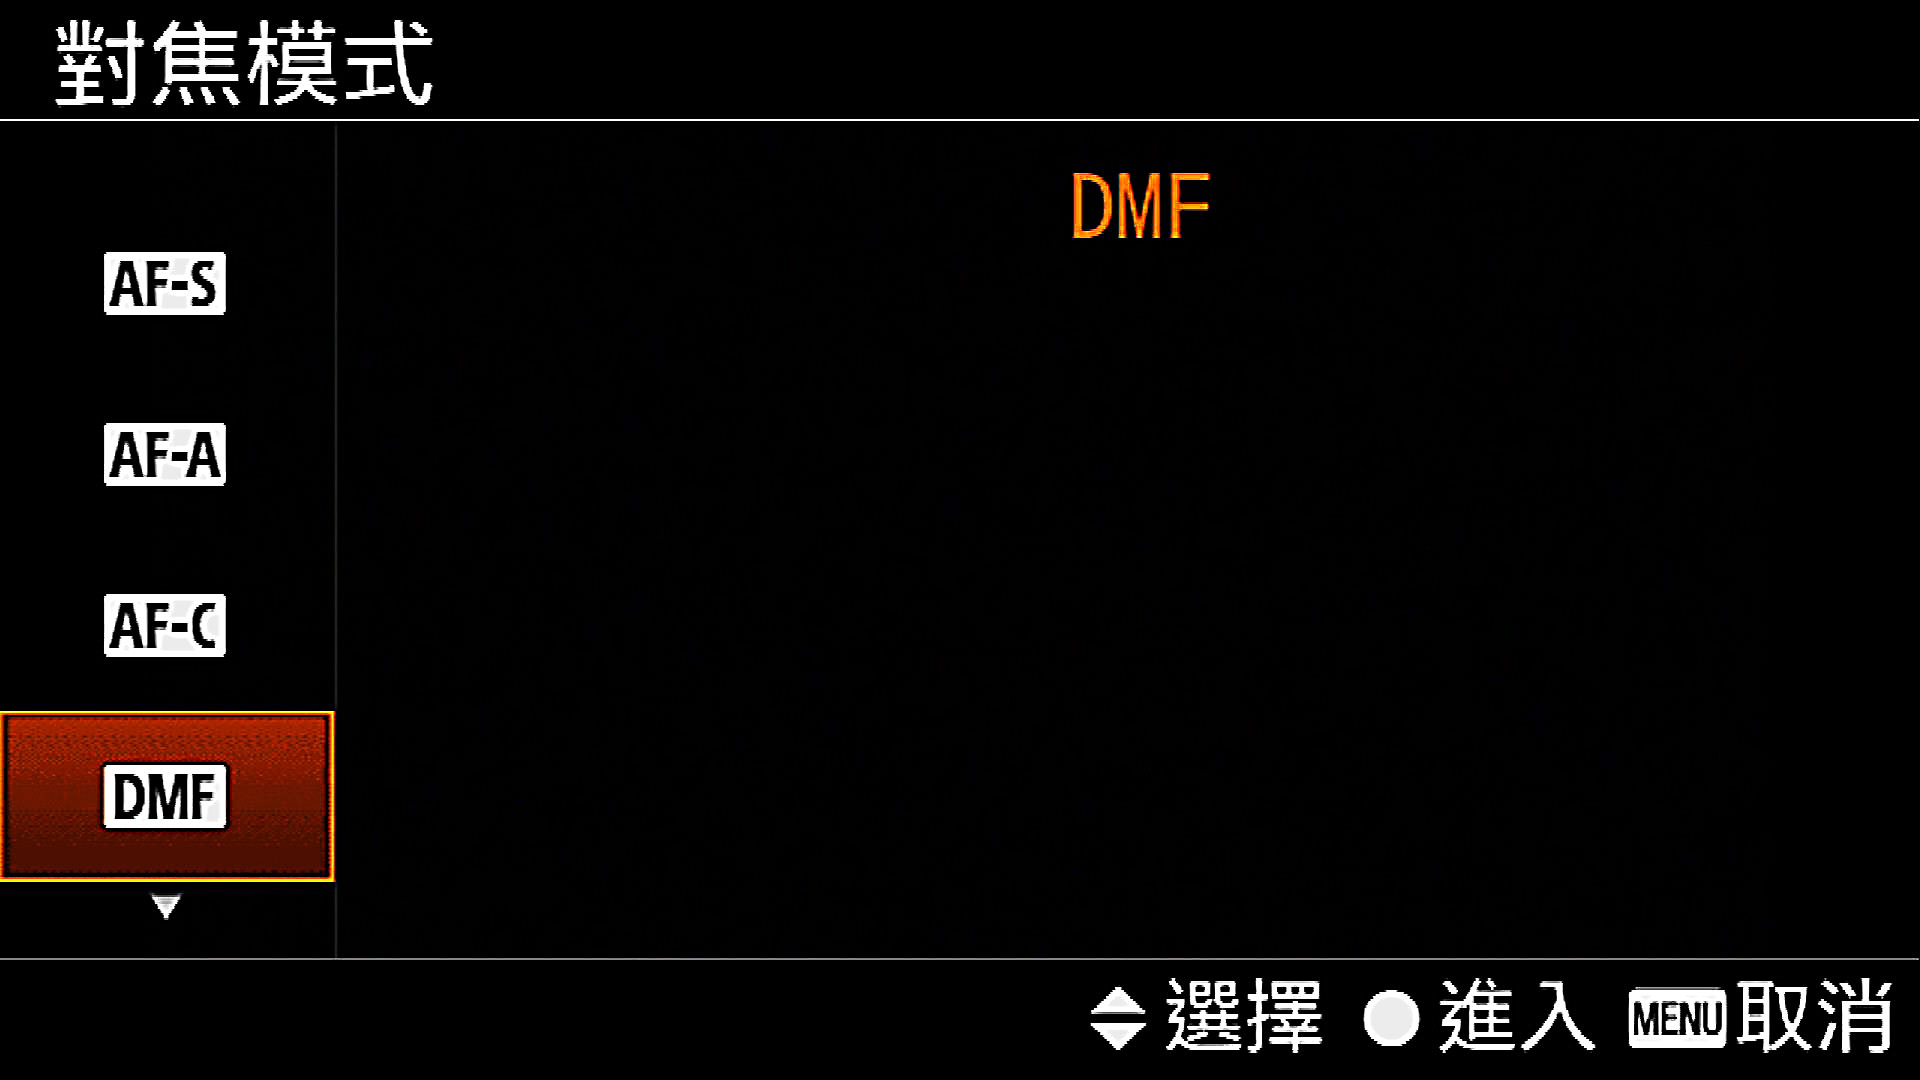 [Sony 相機通用教學] 第 02 集 – Sony 相機對焦模式，一次弄懂 AF-S/AF-C/DMF 原理運用